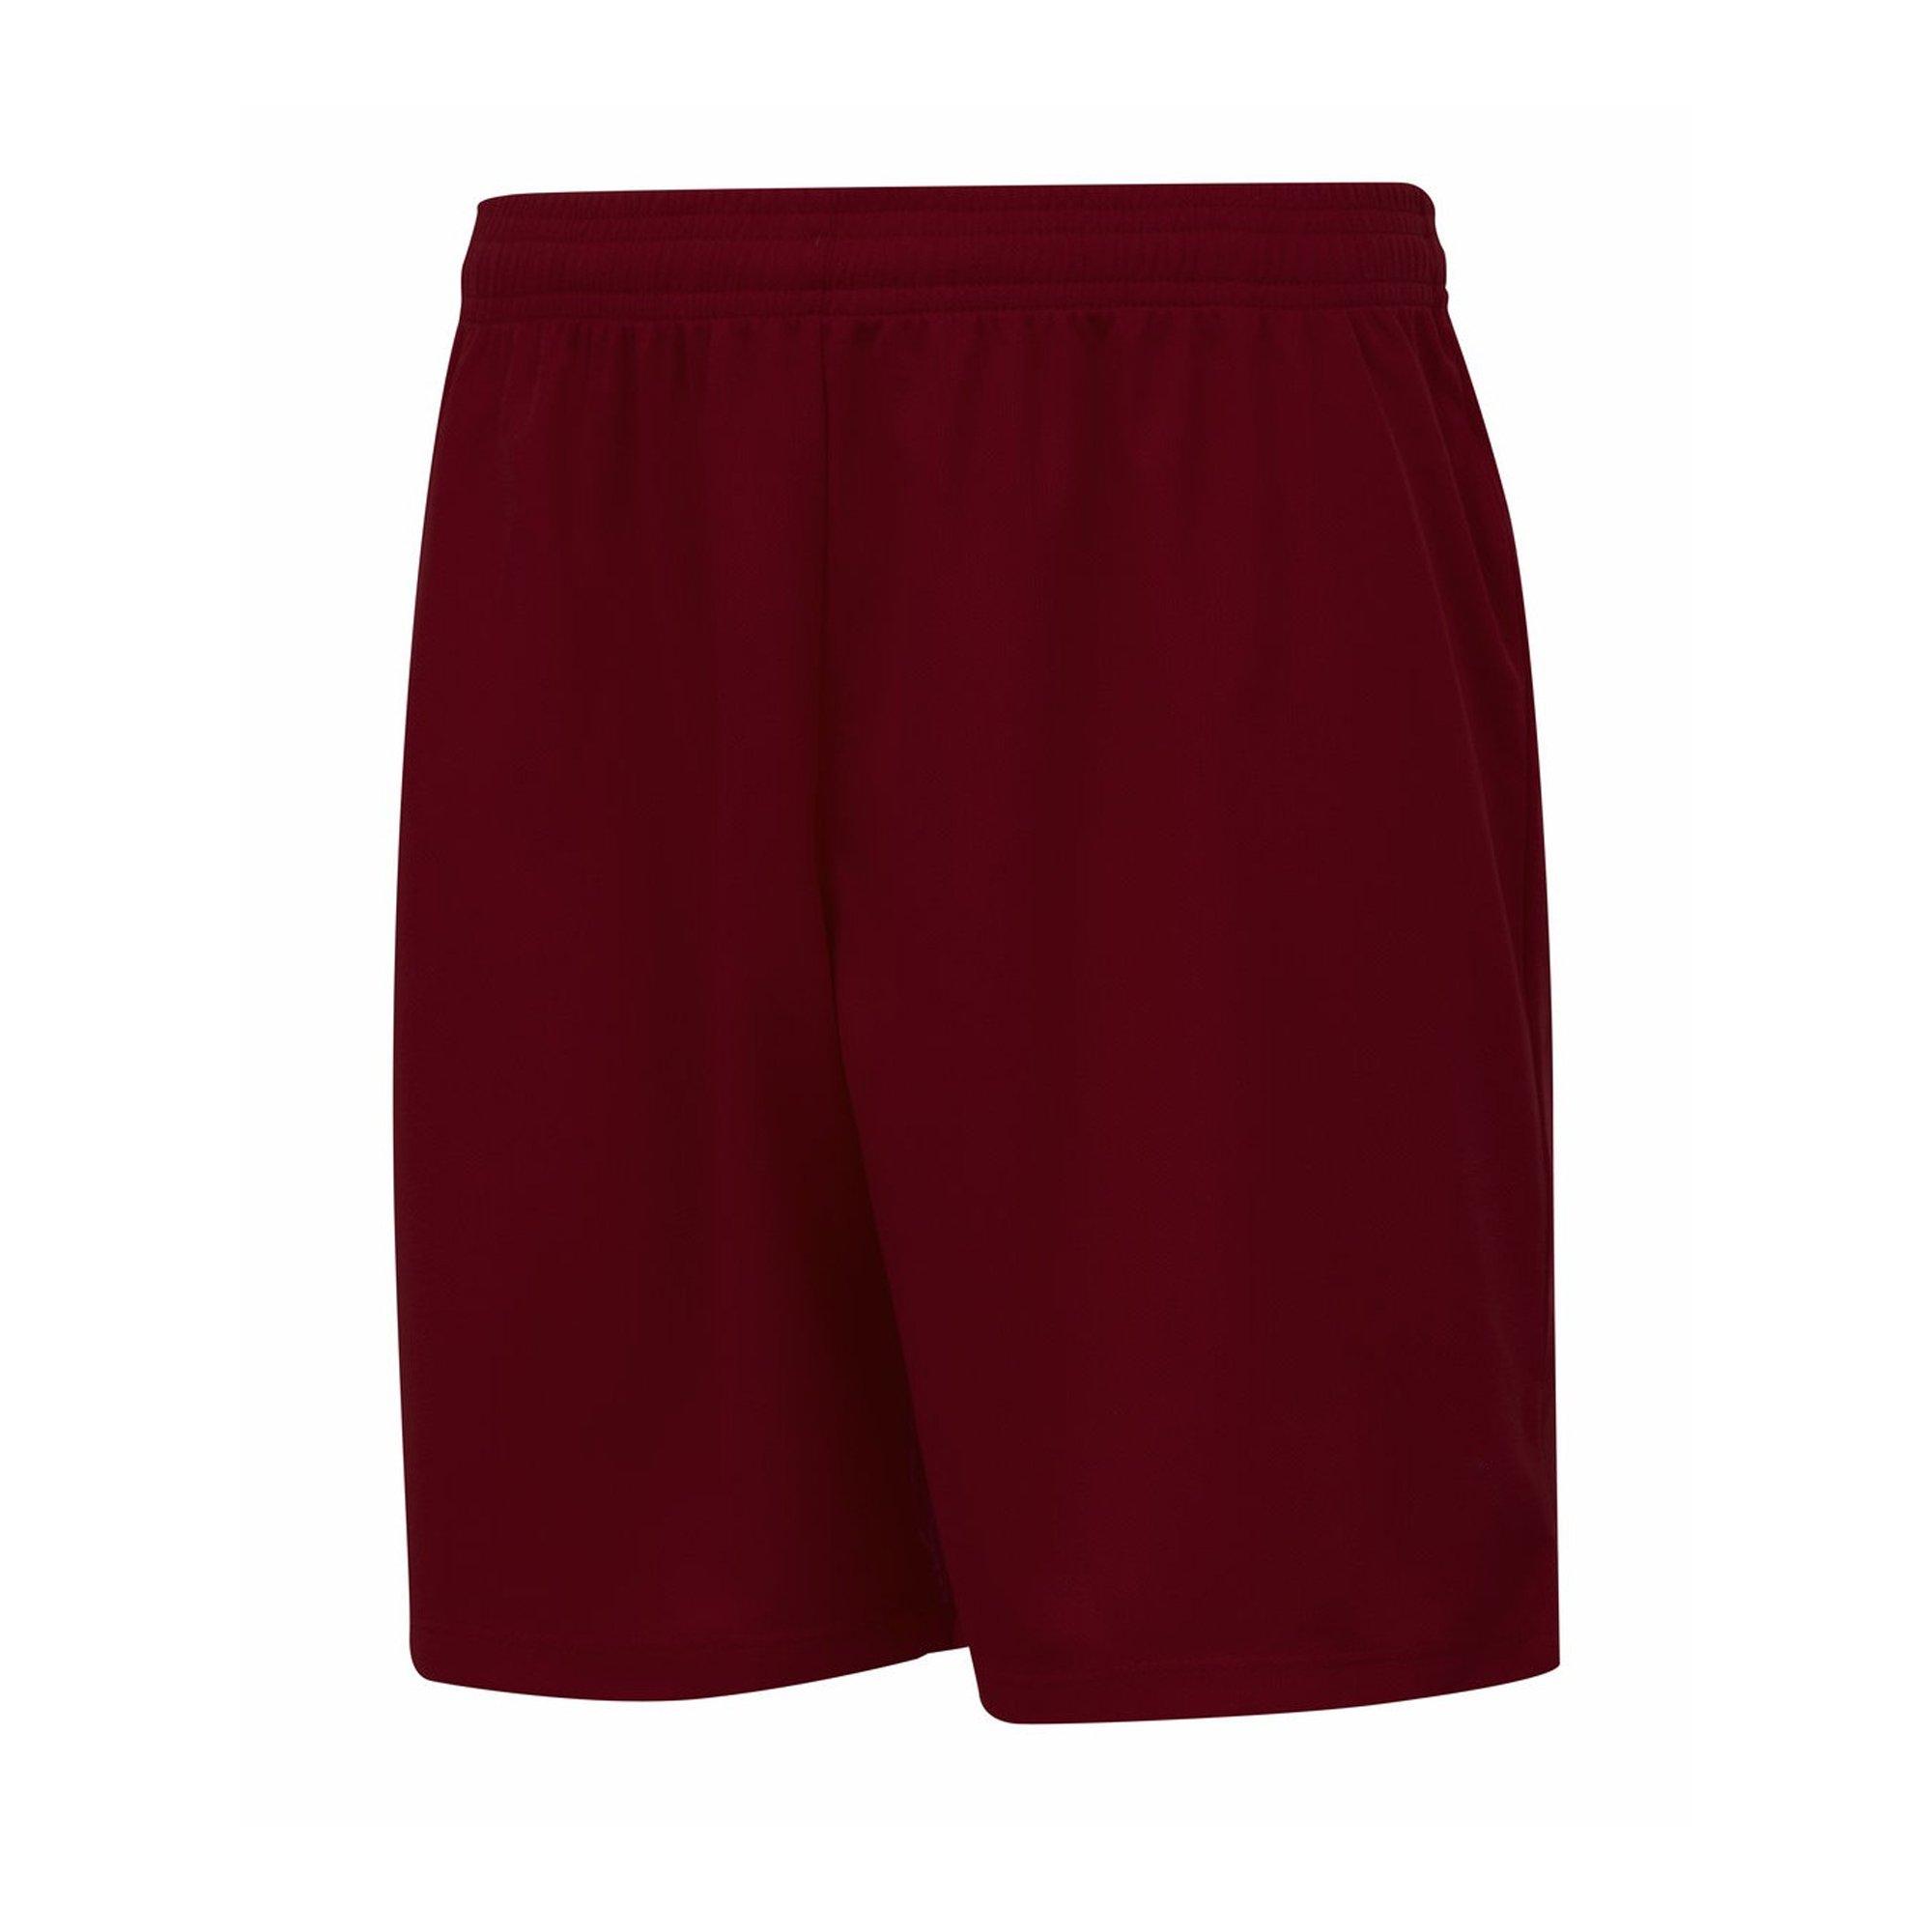 Umbro  Club II Shorts 